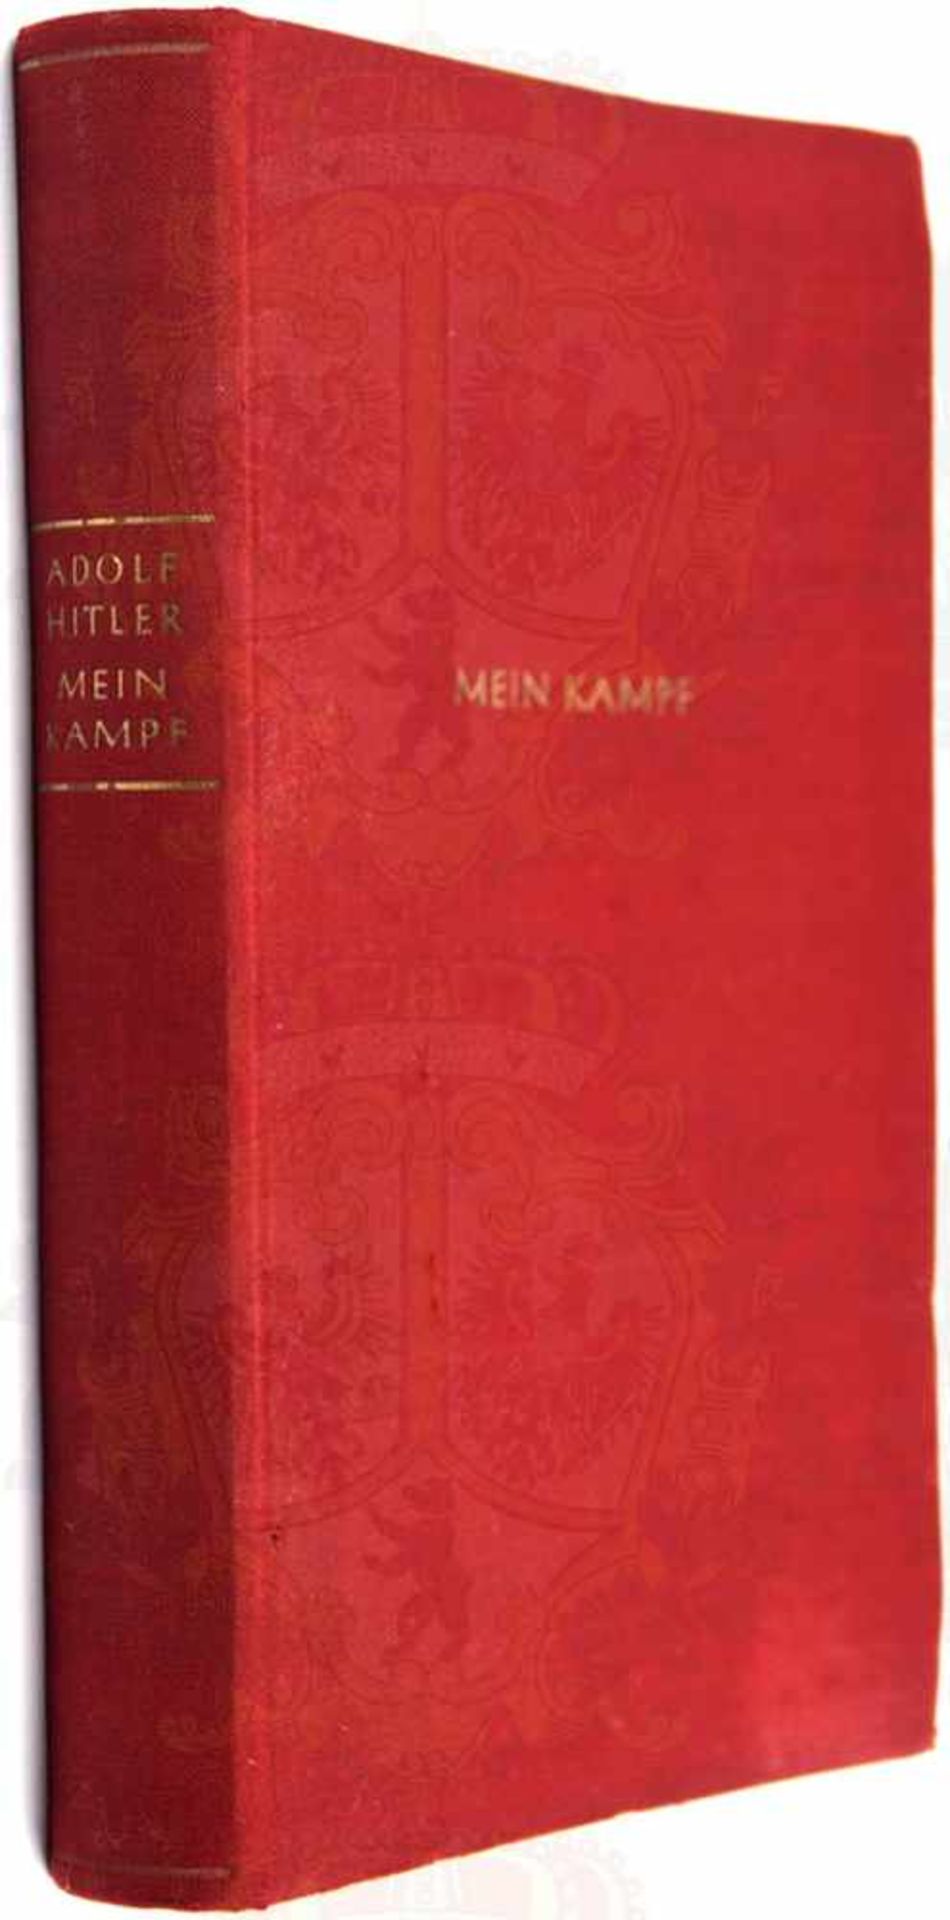 MEIN KAMPF, Adolf Hitler, Dünndruck-Ausgabe, Eher-V. 1940, 1 Portrait, 781 S., gld.gepr., kleinf.